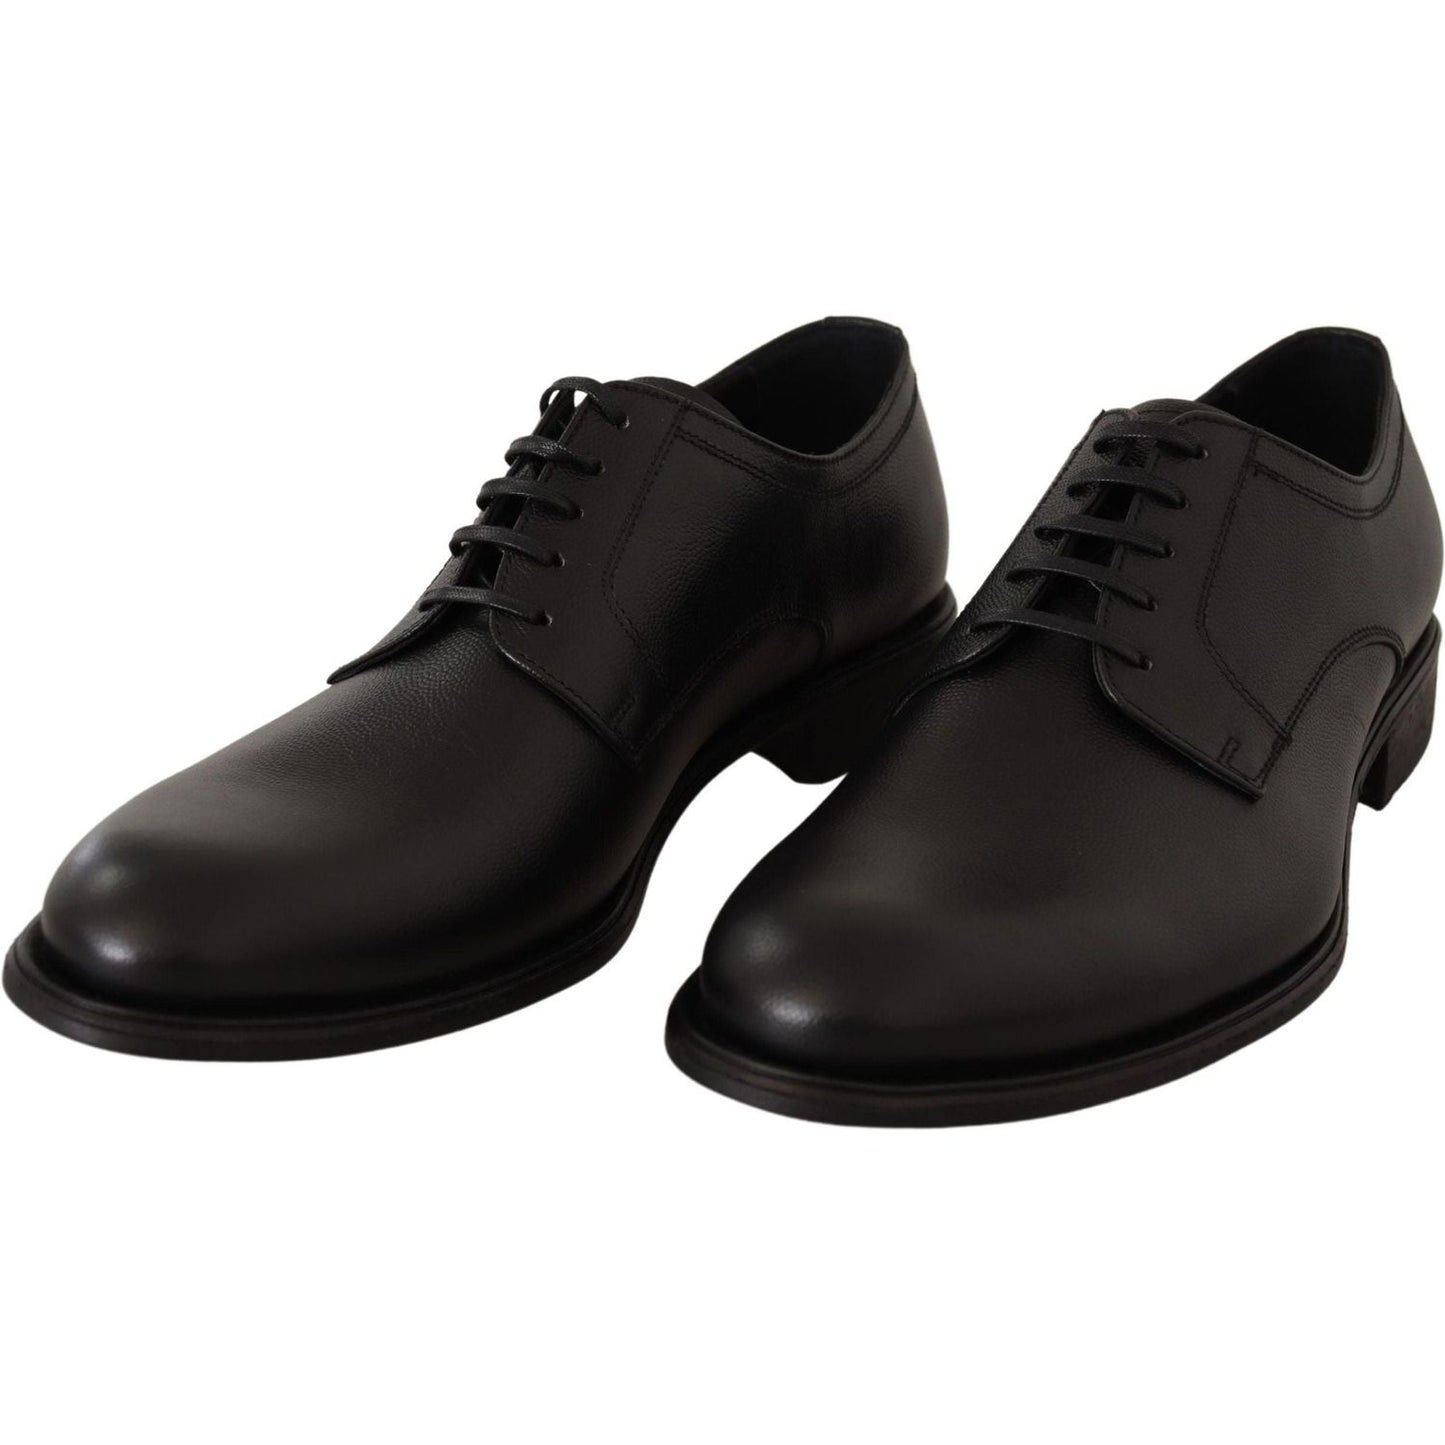 Dolce & Gabbana Elegant Black Leather Derby Shoes black-leather-lace-up-mens-formal-derby-shoes-1 IMG_4969-scaled-a2c7c25c-b06.jpg